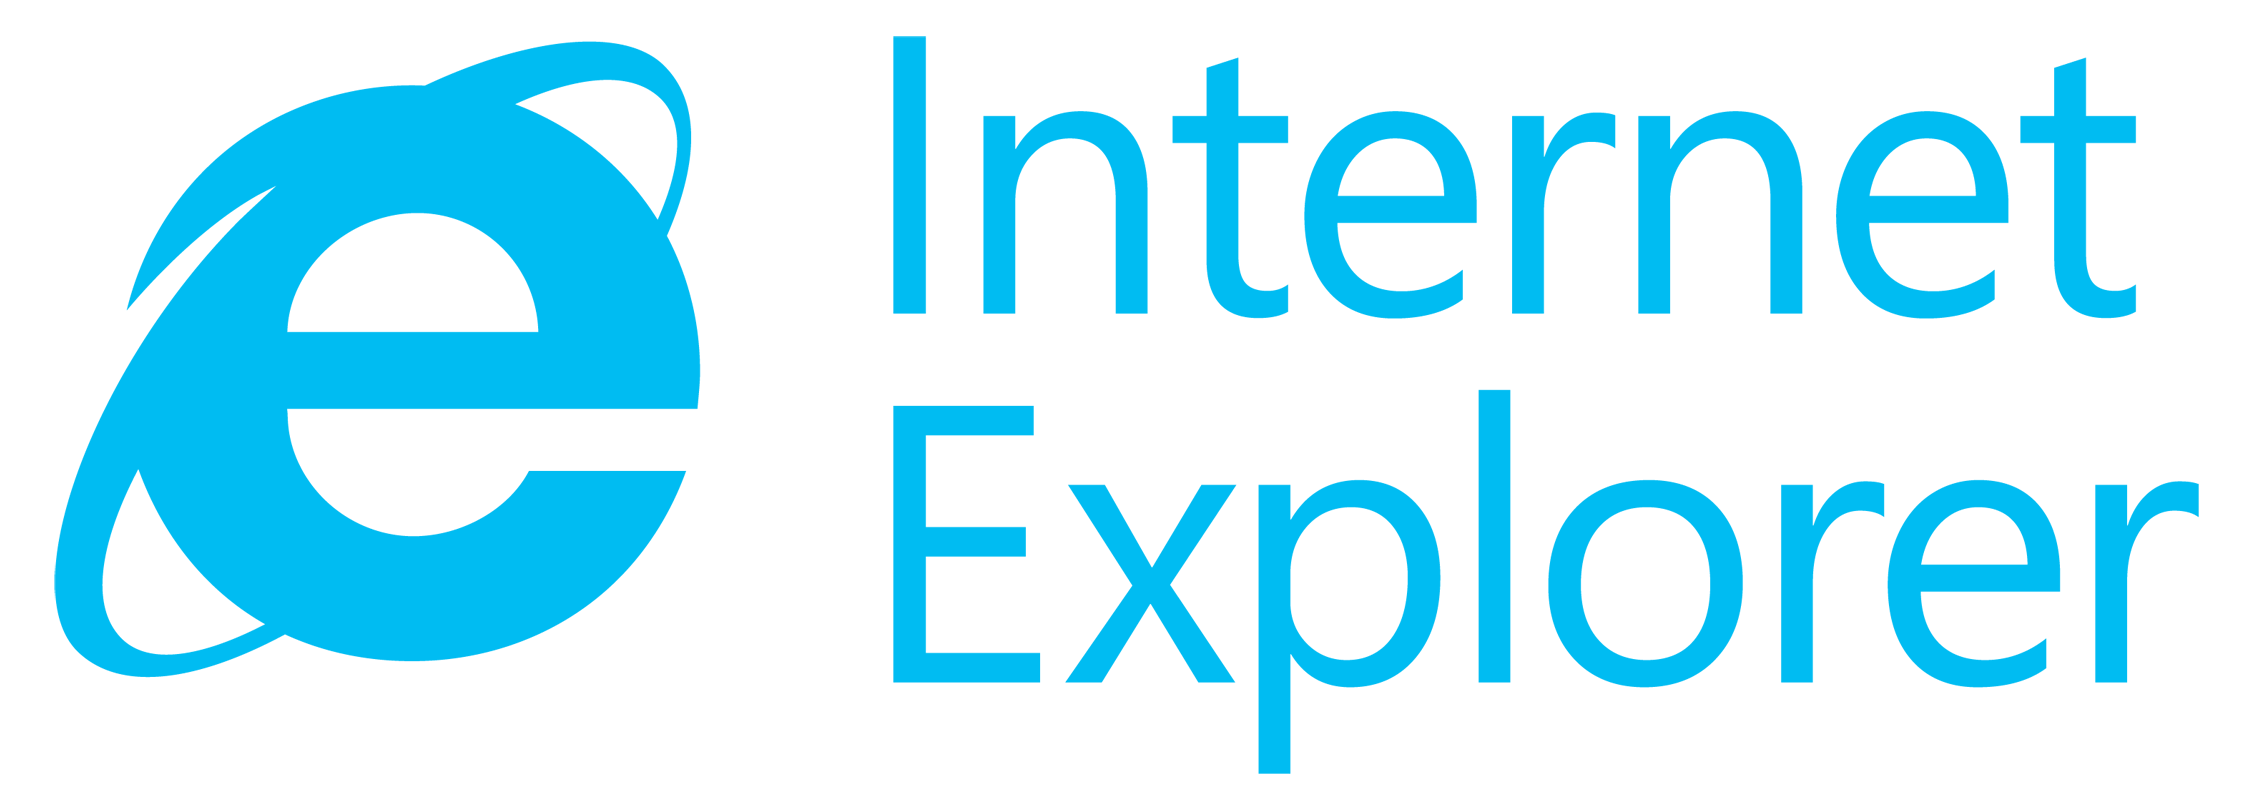 Internet Explorer 10 Logo - C-SAM News » Internet Explorer 8, 9, 10 End of Support